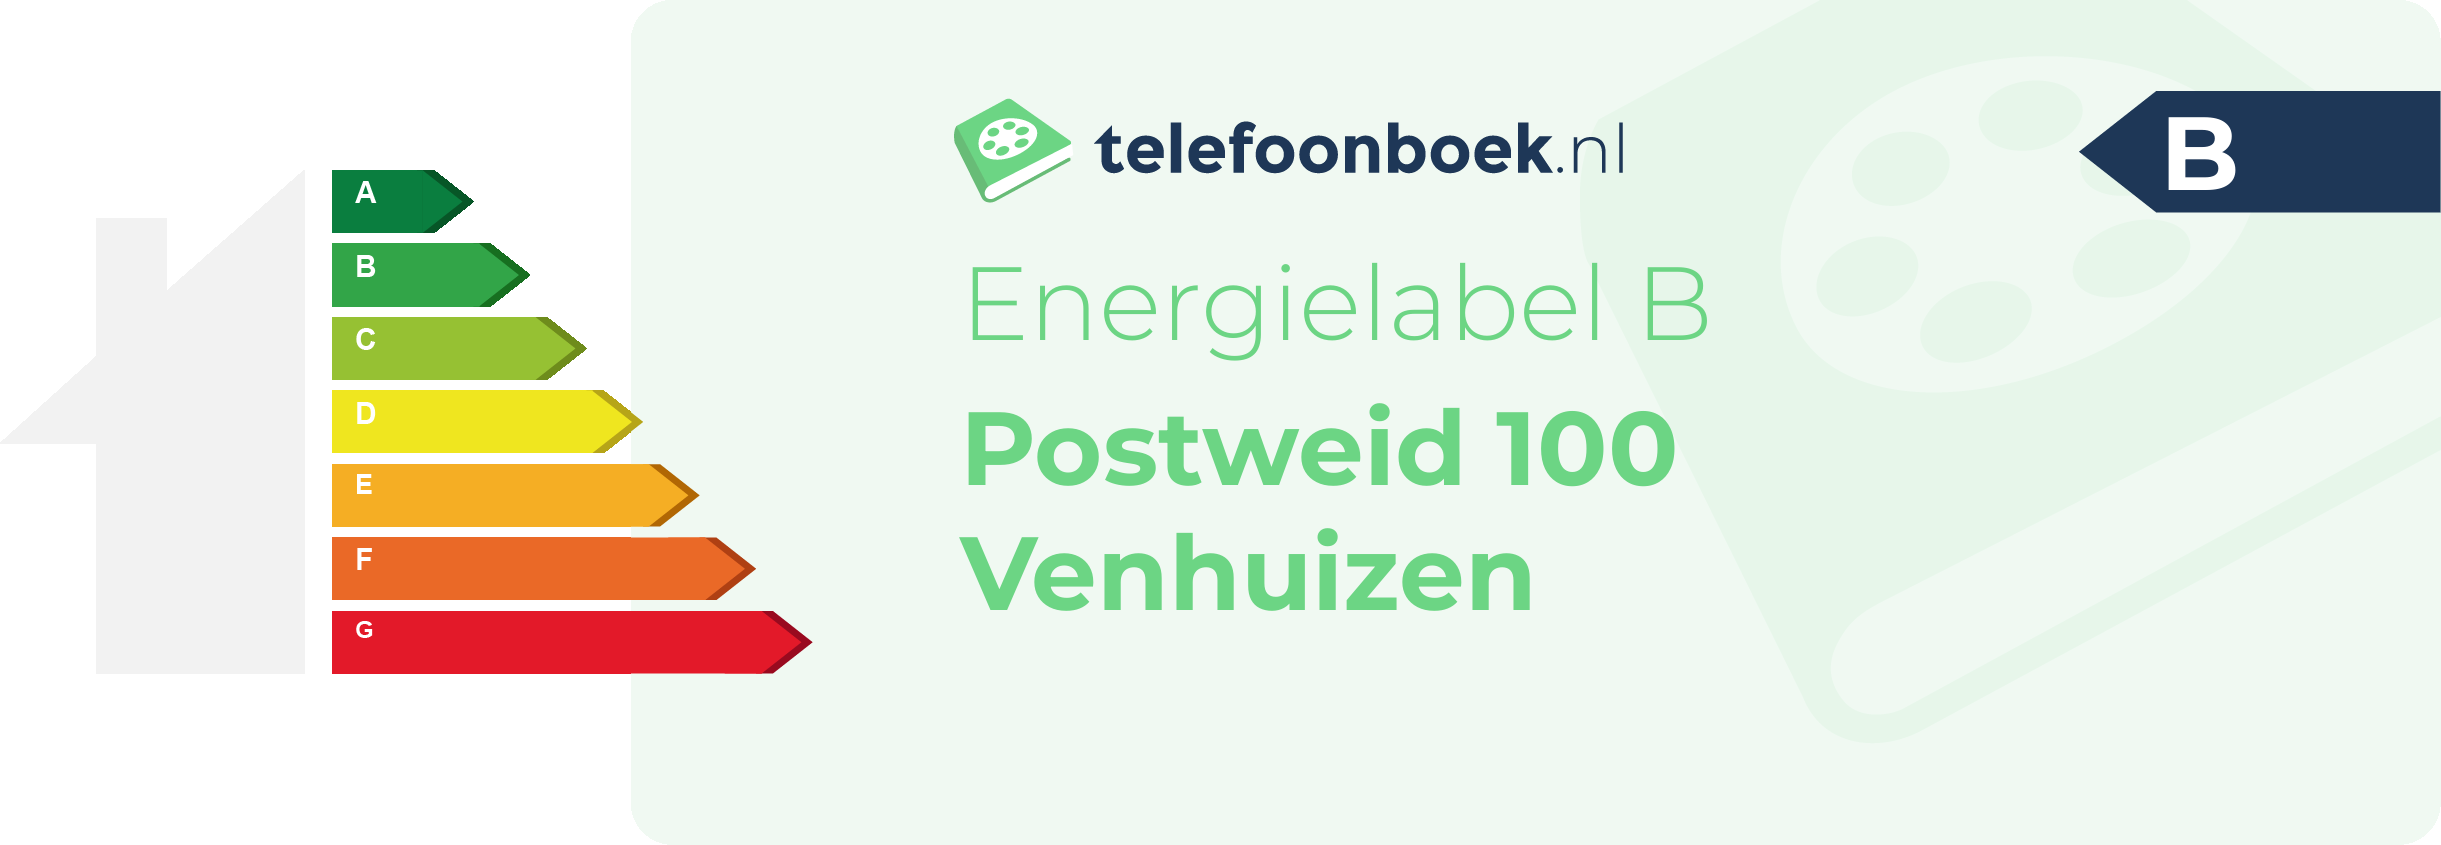 Energielabel Postweid 100 Venhuizen